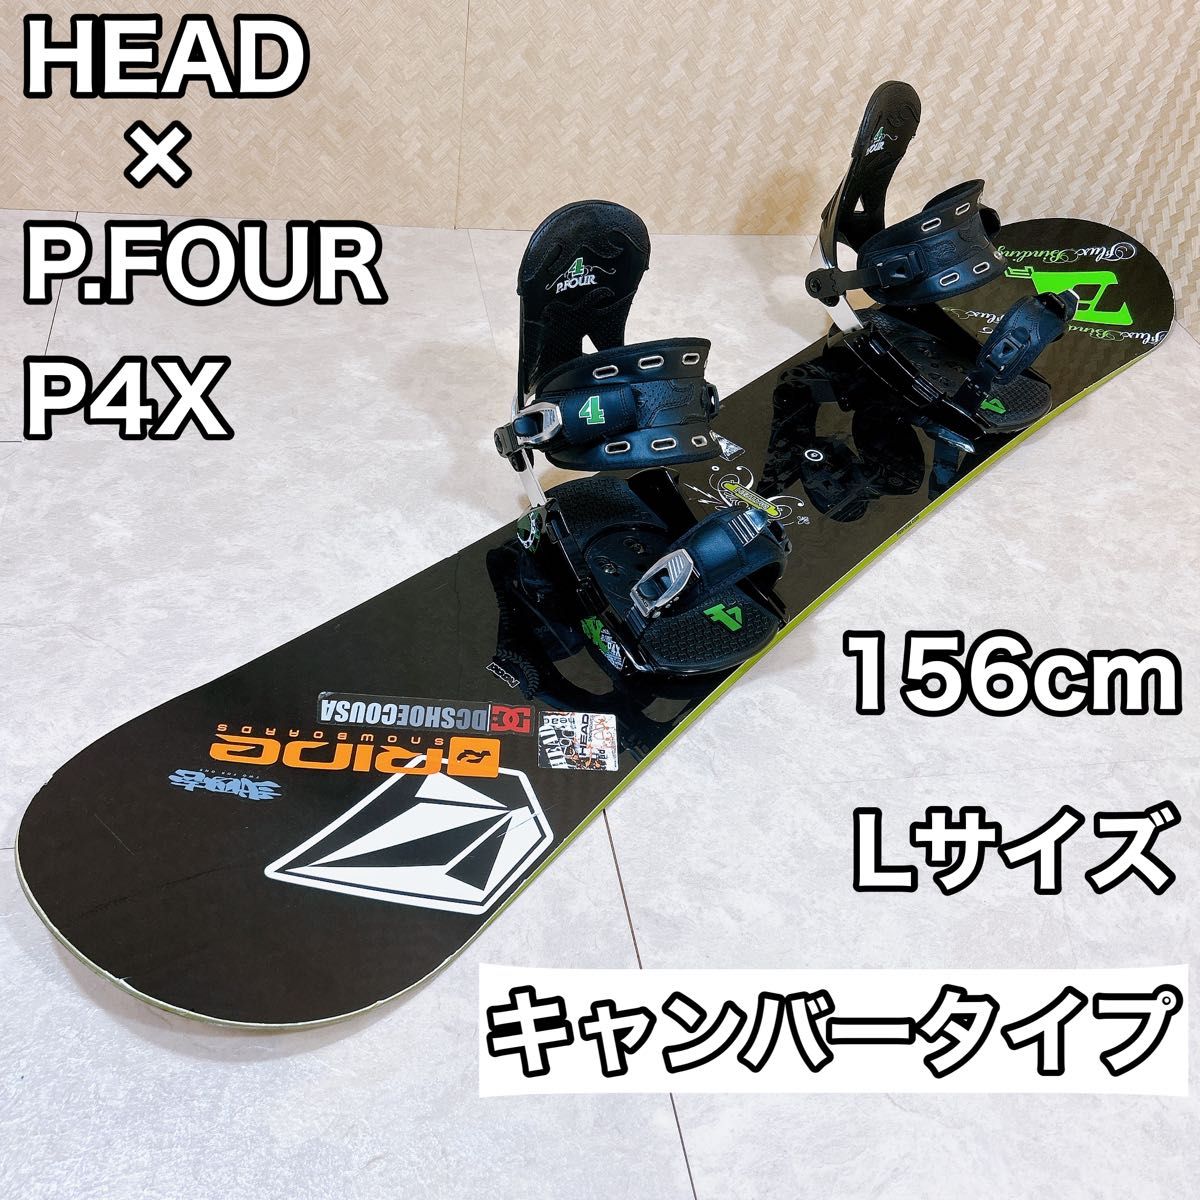 【初心者おすすめ 】 HEAD × P.FOUR スノーボードセット 156cm